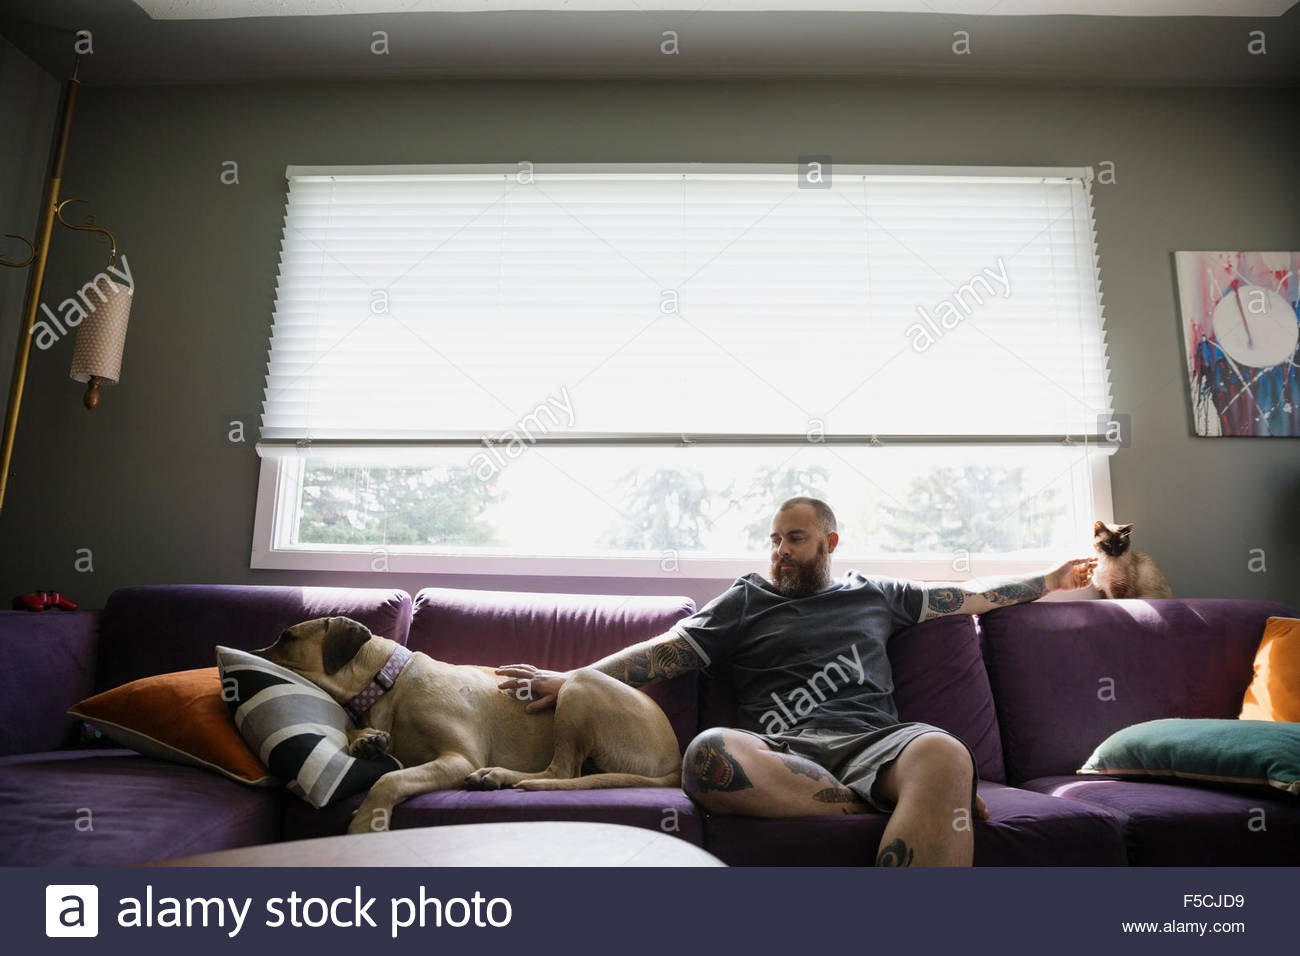 L'homme sur canapé petting dog and cat Banque D'Images